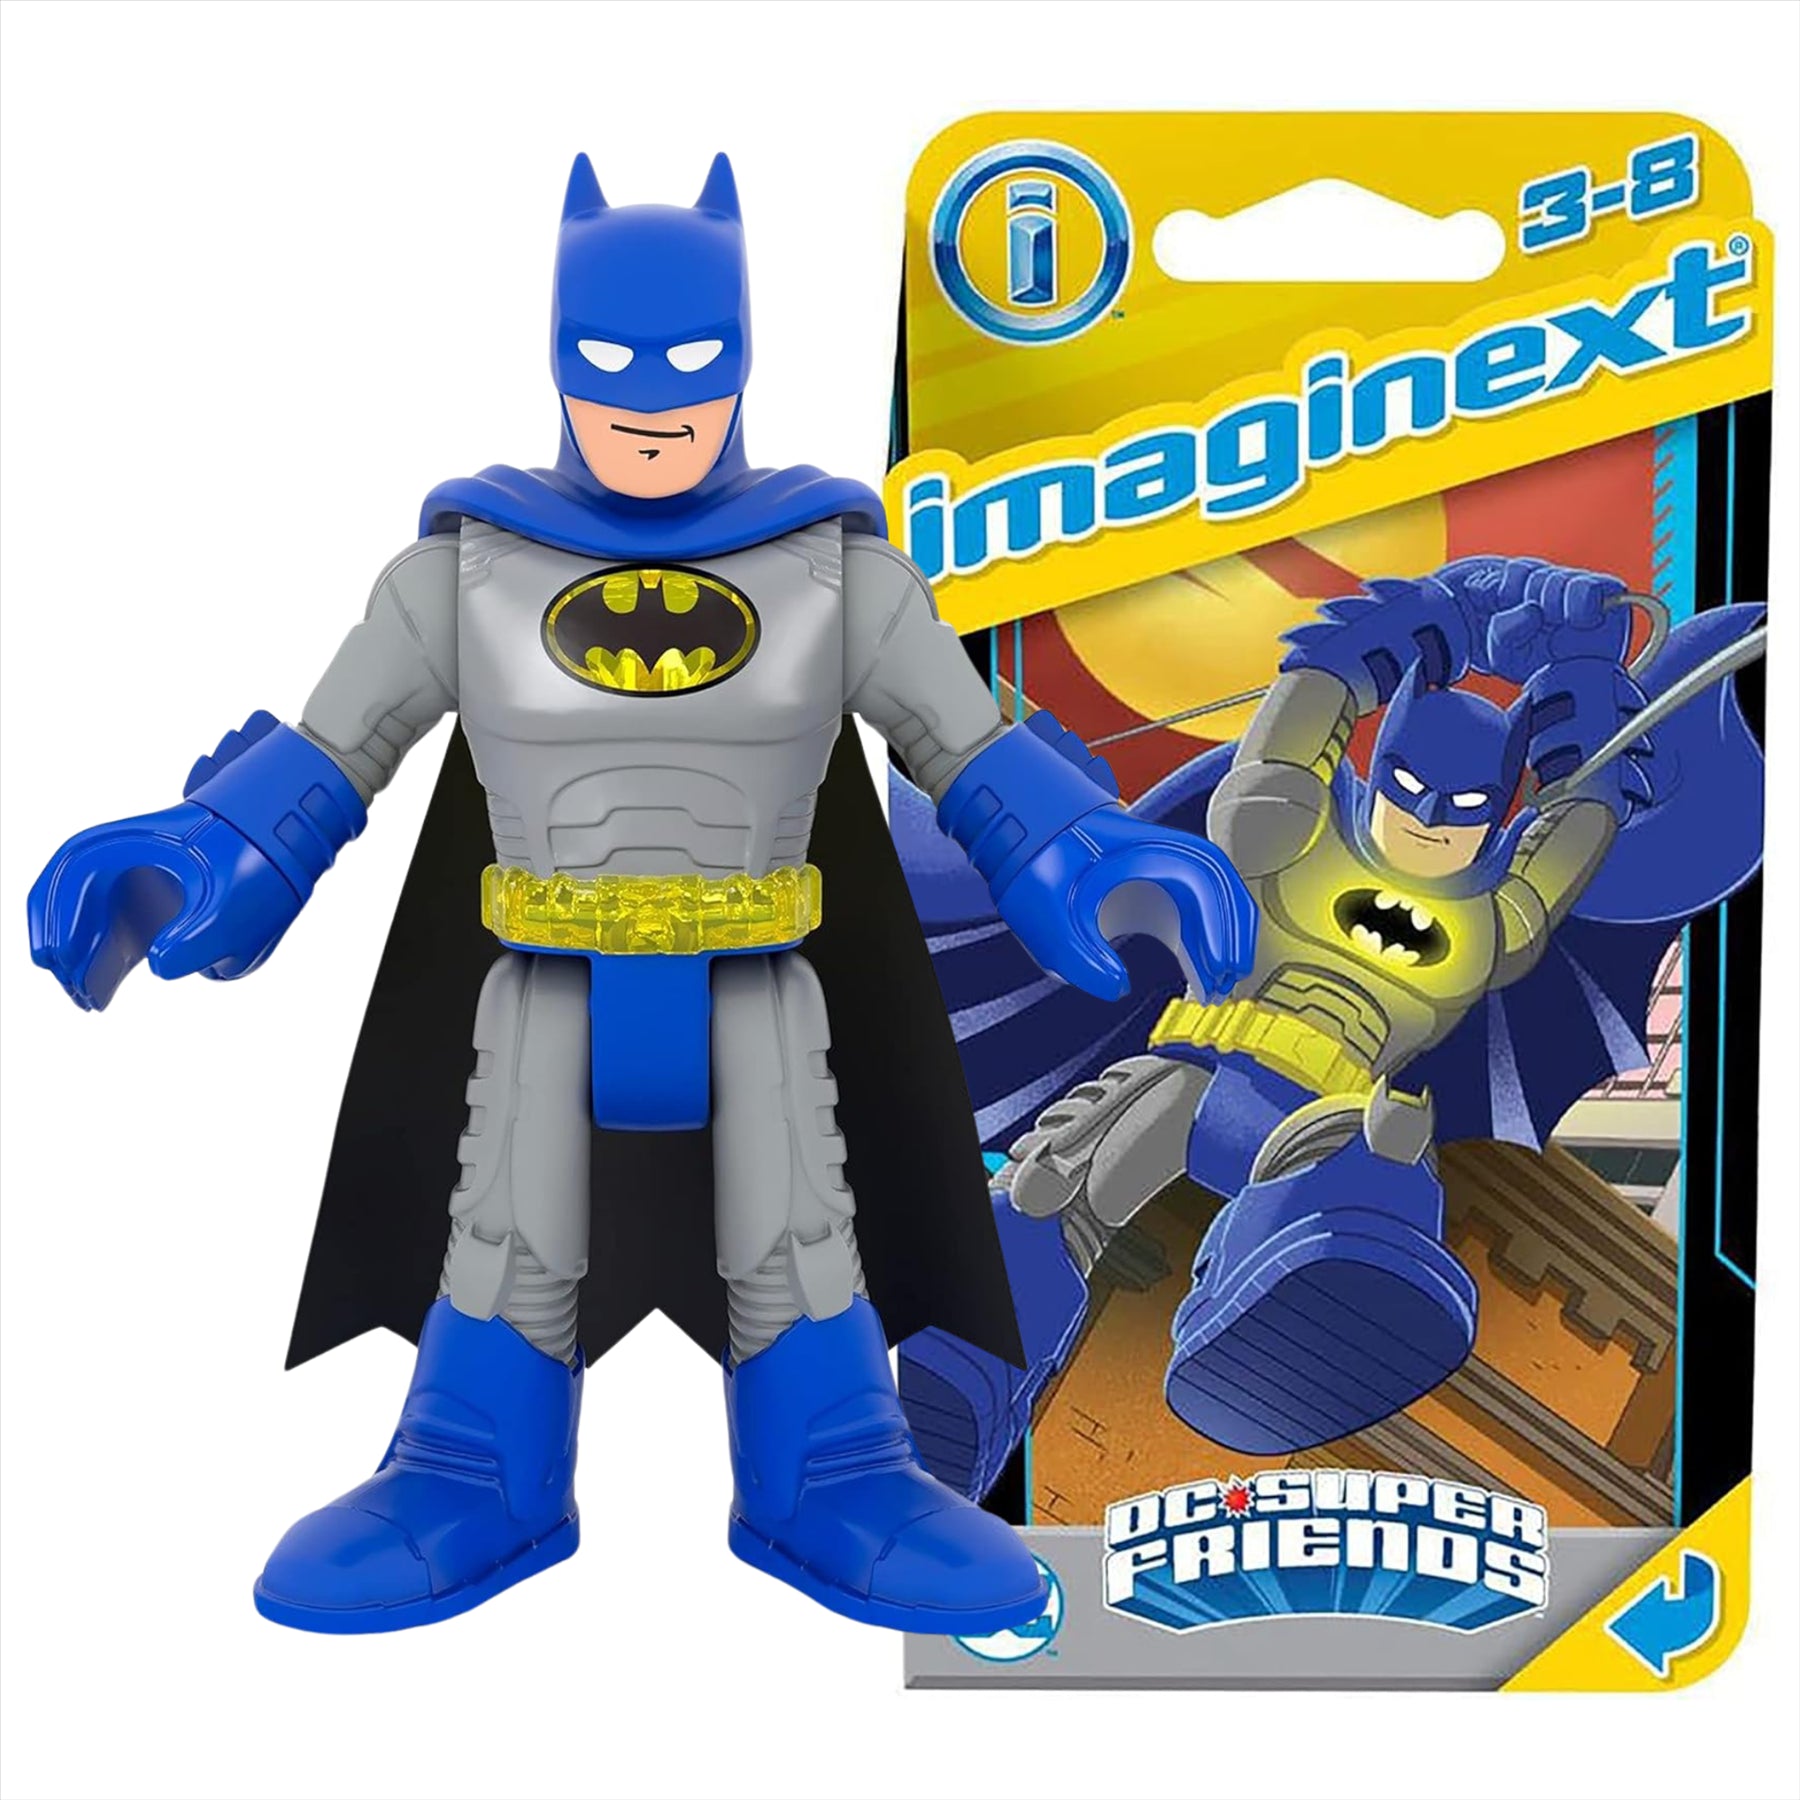 Imaginext DC Super Friends Batman Miniature Action Figure Play Toy